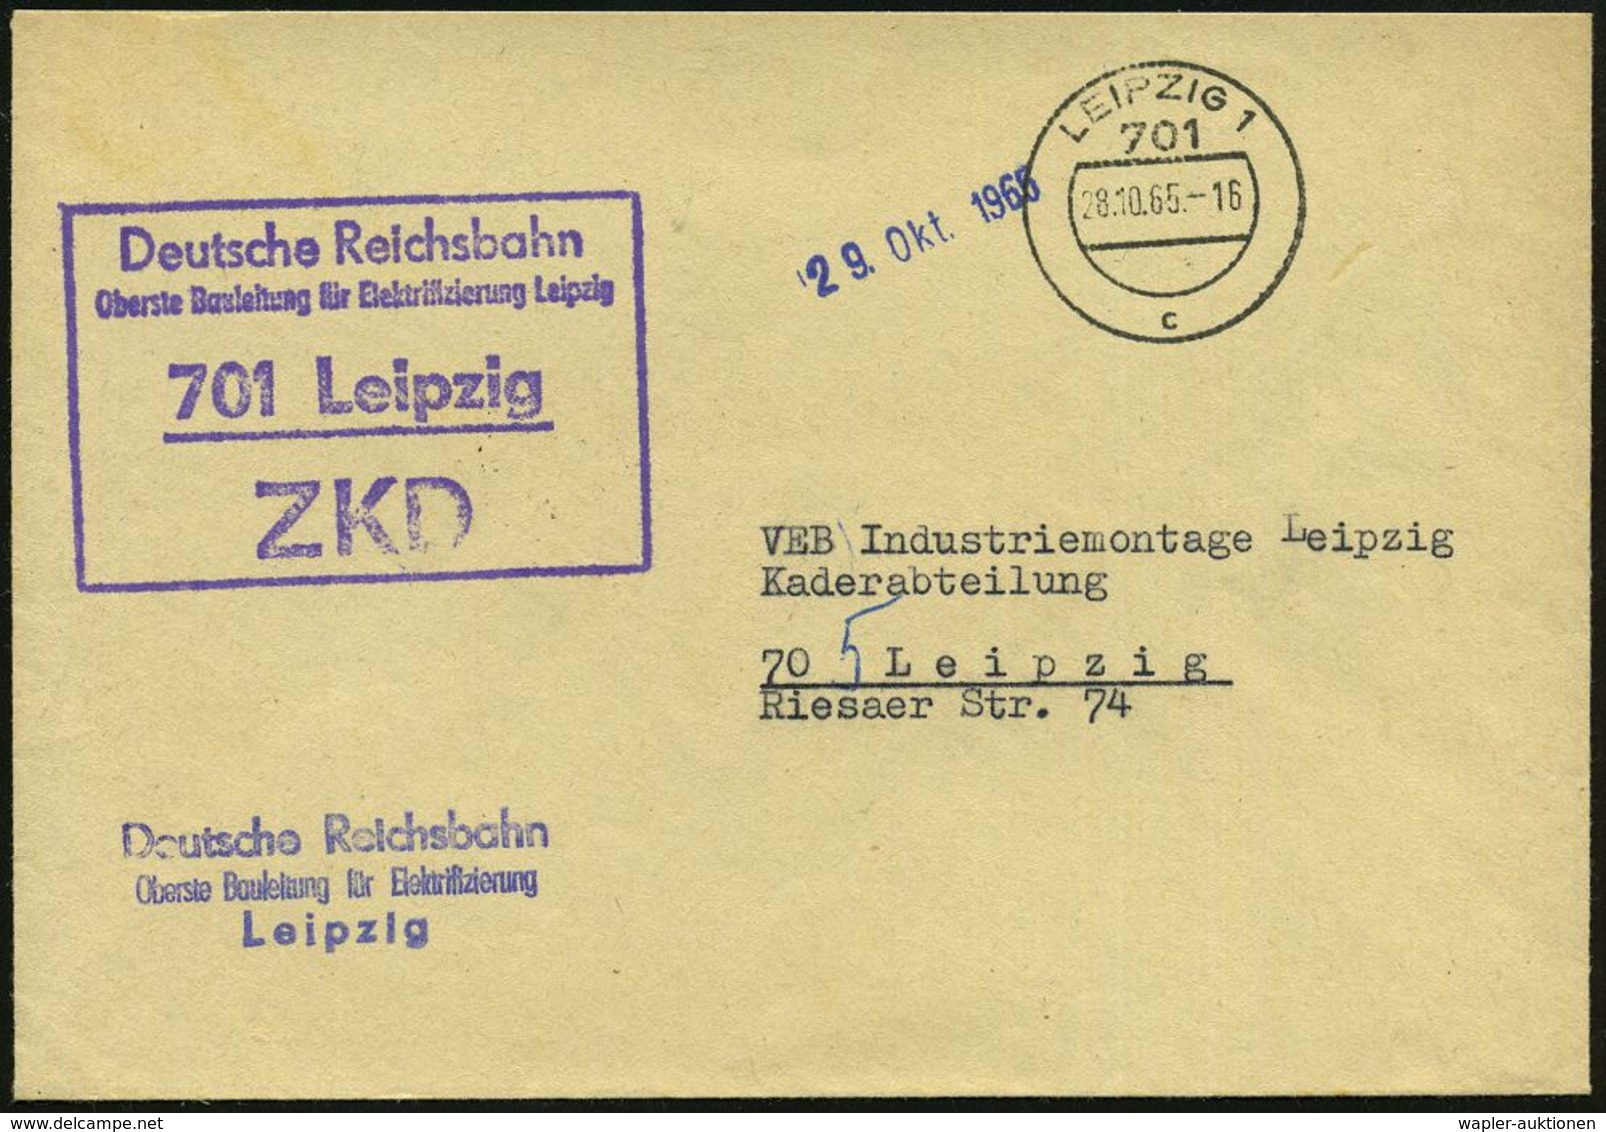 EISENBAHN-GESELLSCHAFTEN / REICHSBAHN / BUNDESBAHN : 701 Leipzig/ ZKD/ Deutsche Reichsbahn/ Oberste Bauleitung Für Elekt - Eisenbahnen